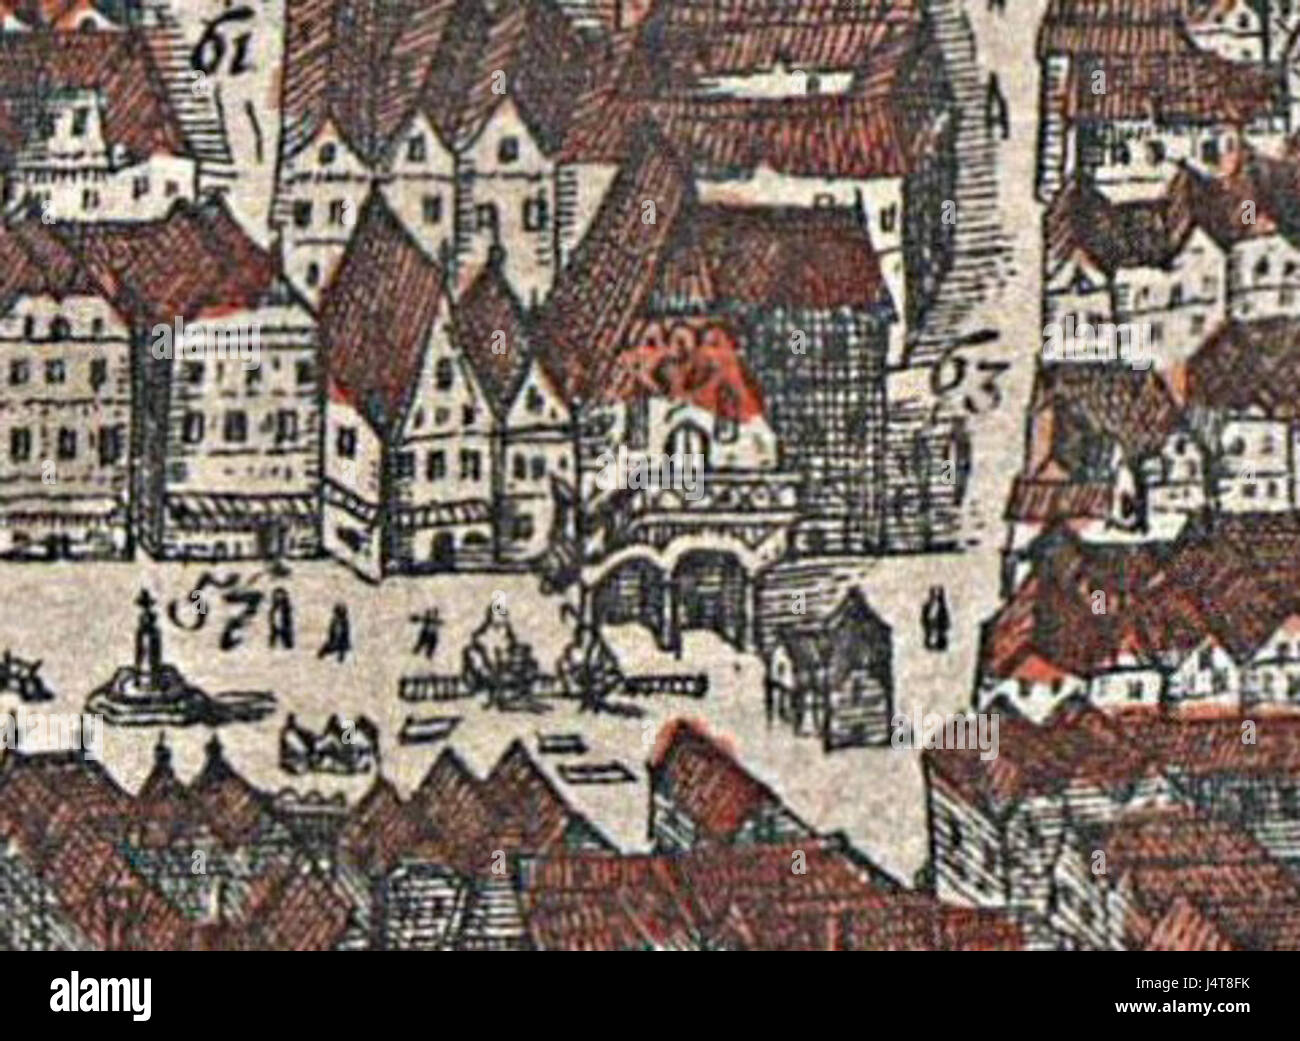 1609 Wien Schranne Hoefnagel Banque D'Images